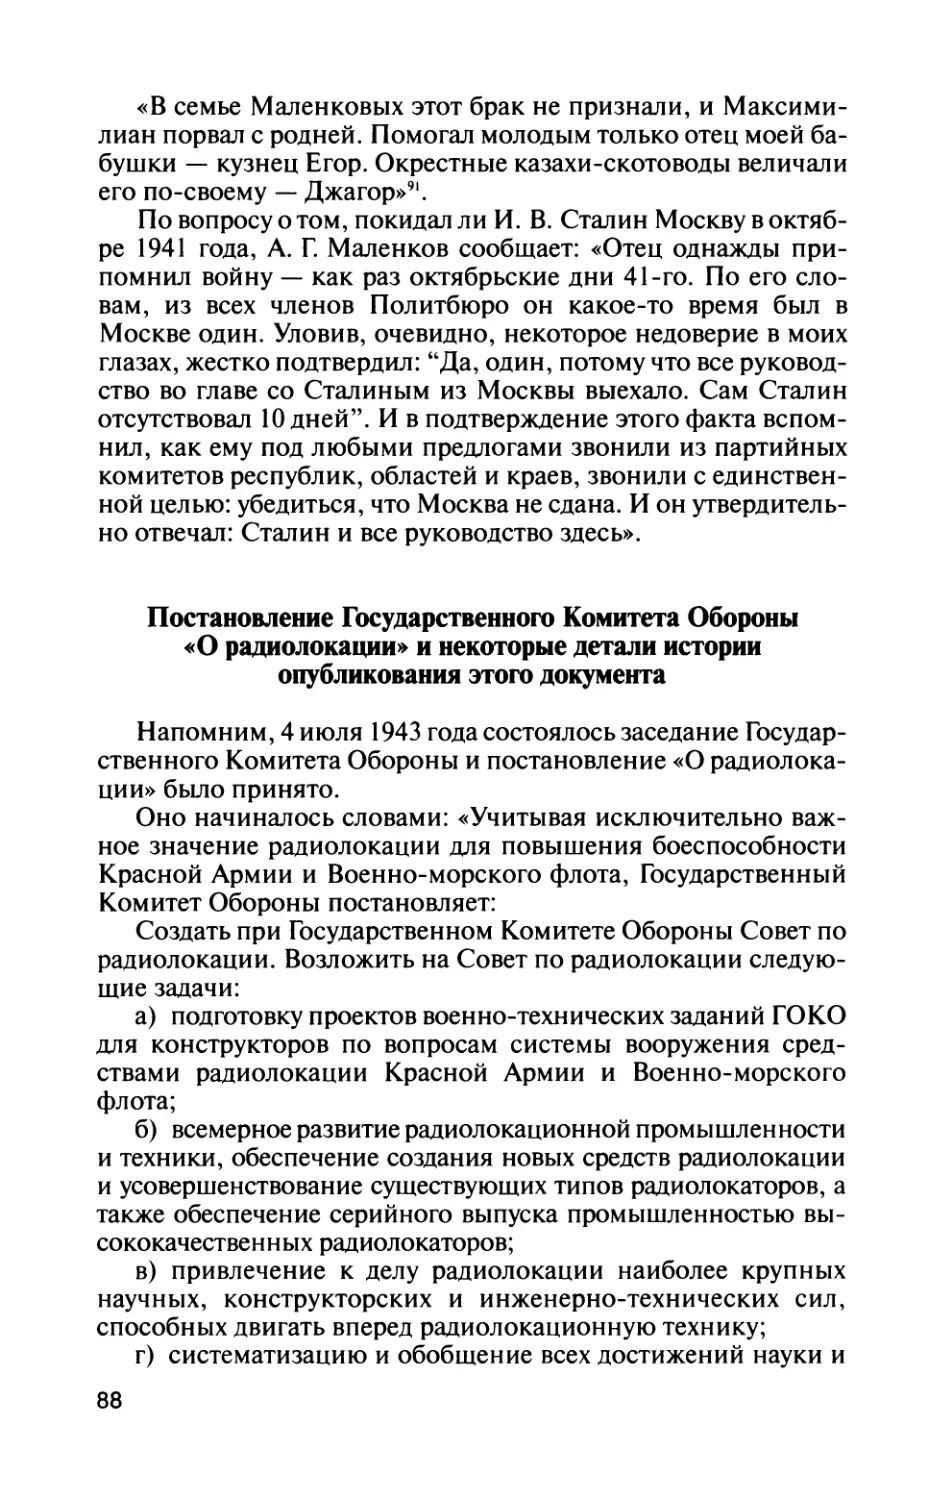 Постановление Государственного Комитета Обороны «О радиолокации» и некоторые детали истории опубликования этого документа